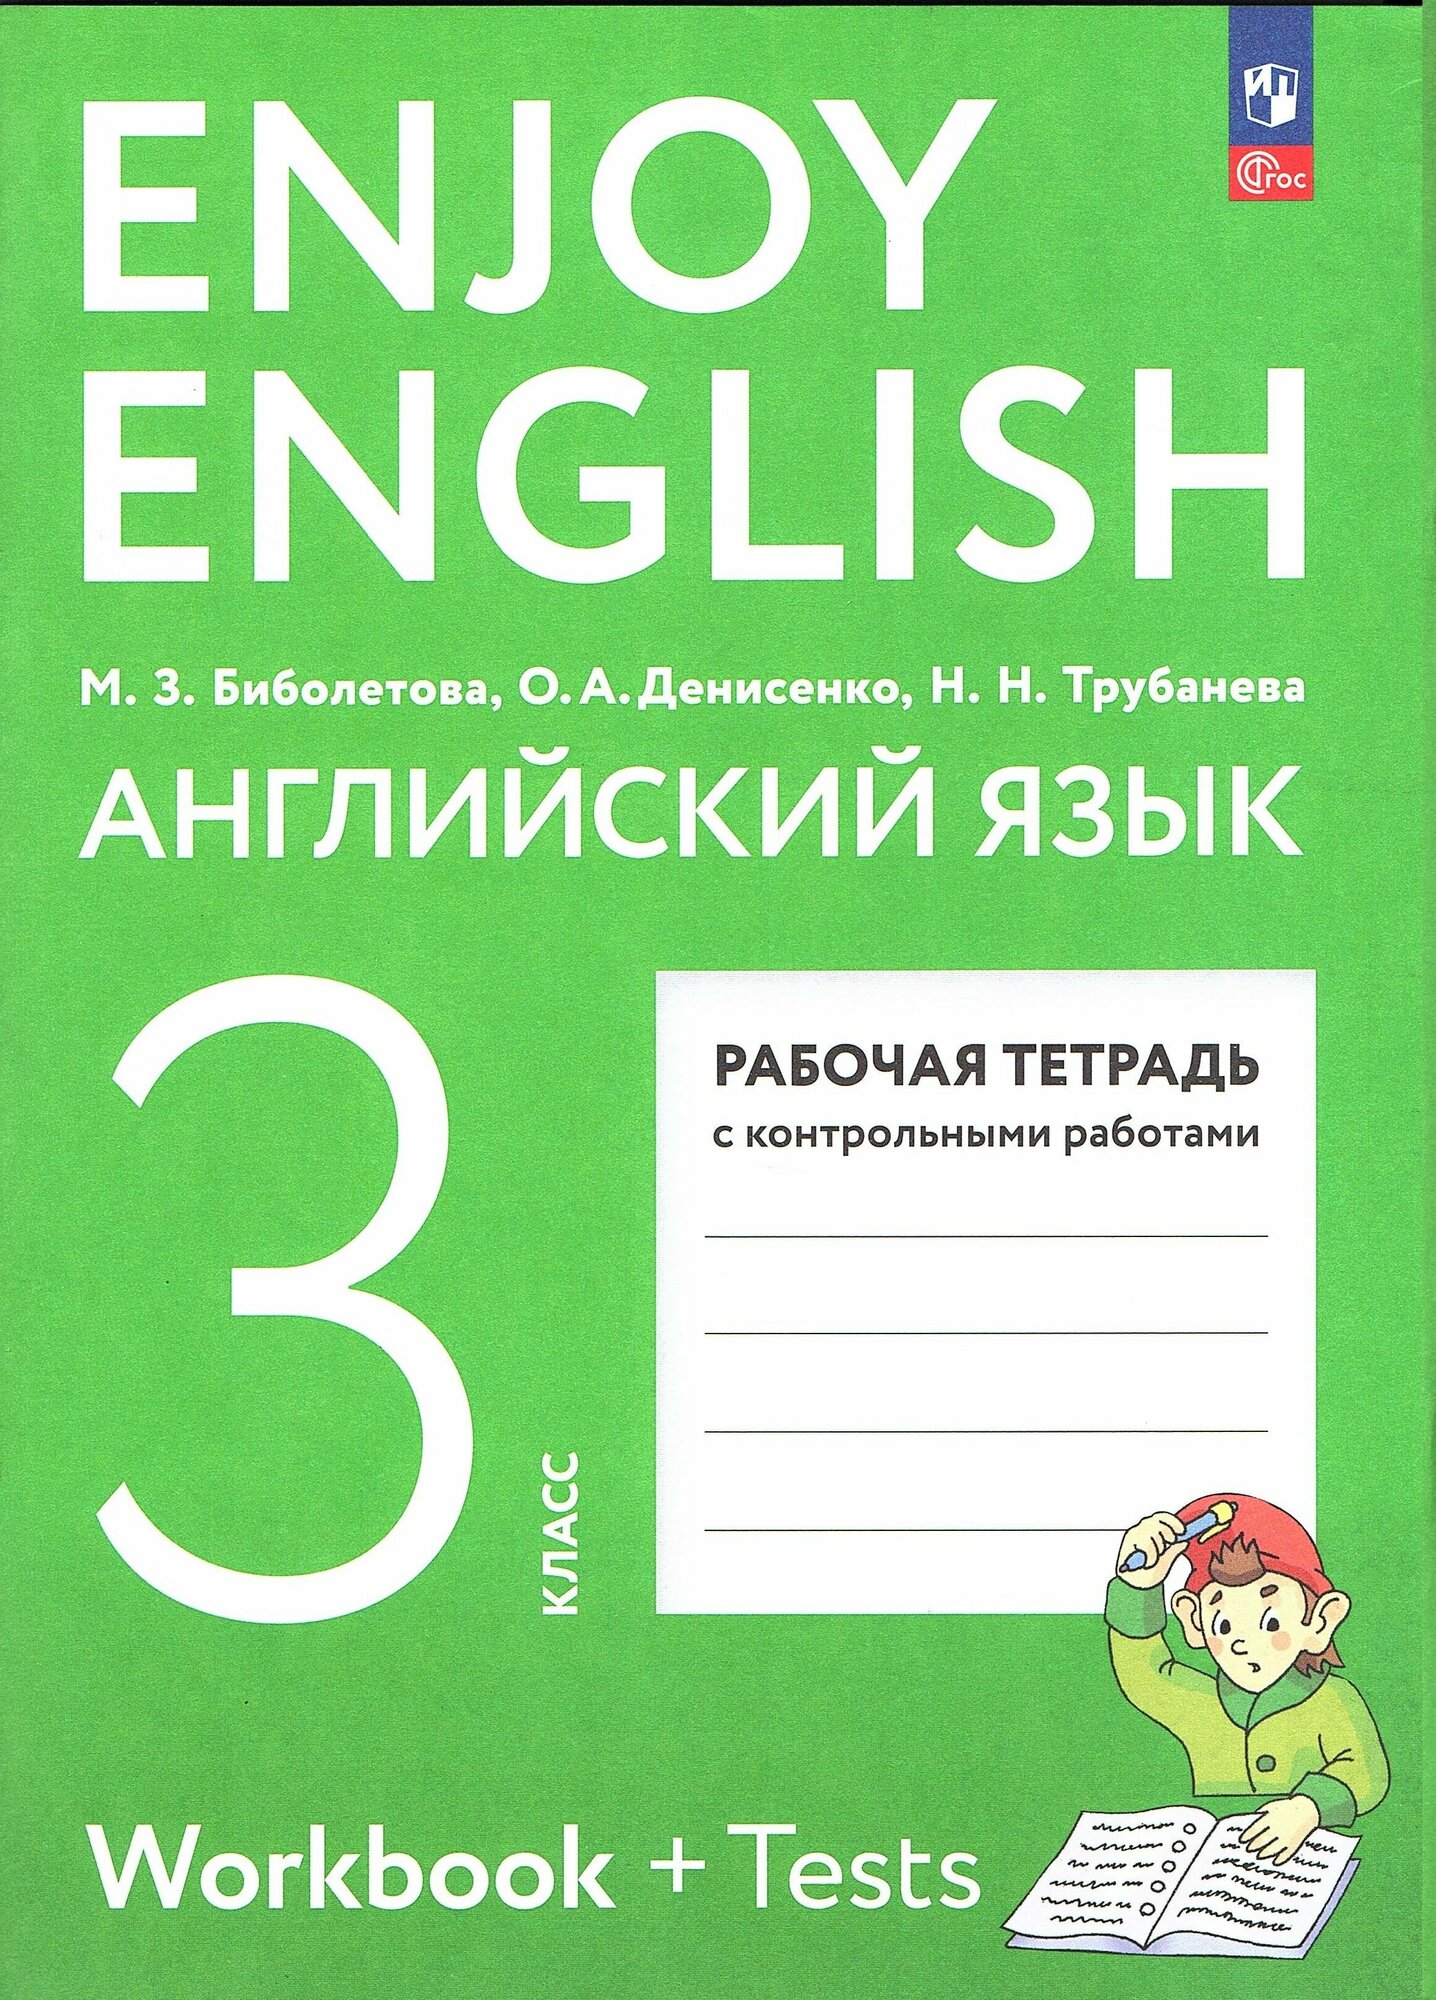 Биболетова М. З. Английский язык 3 класс Рабочая тетрадь с контрольными работами (Enjoy English)